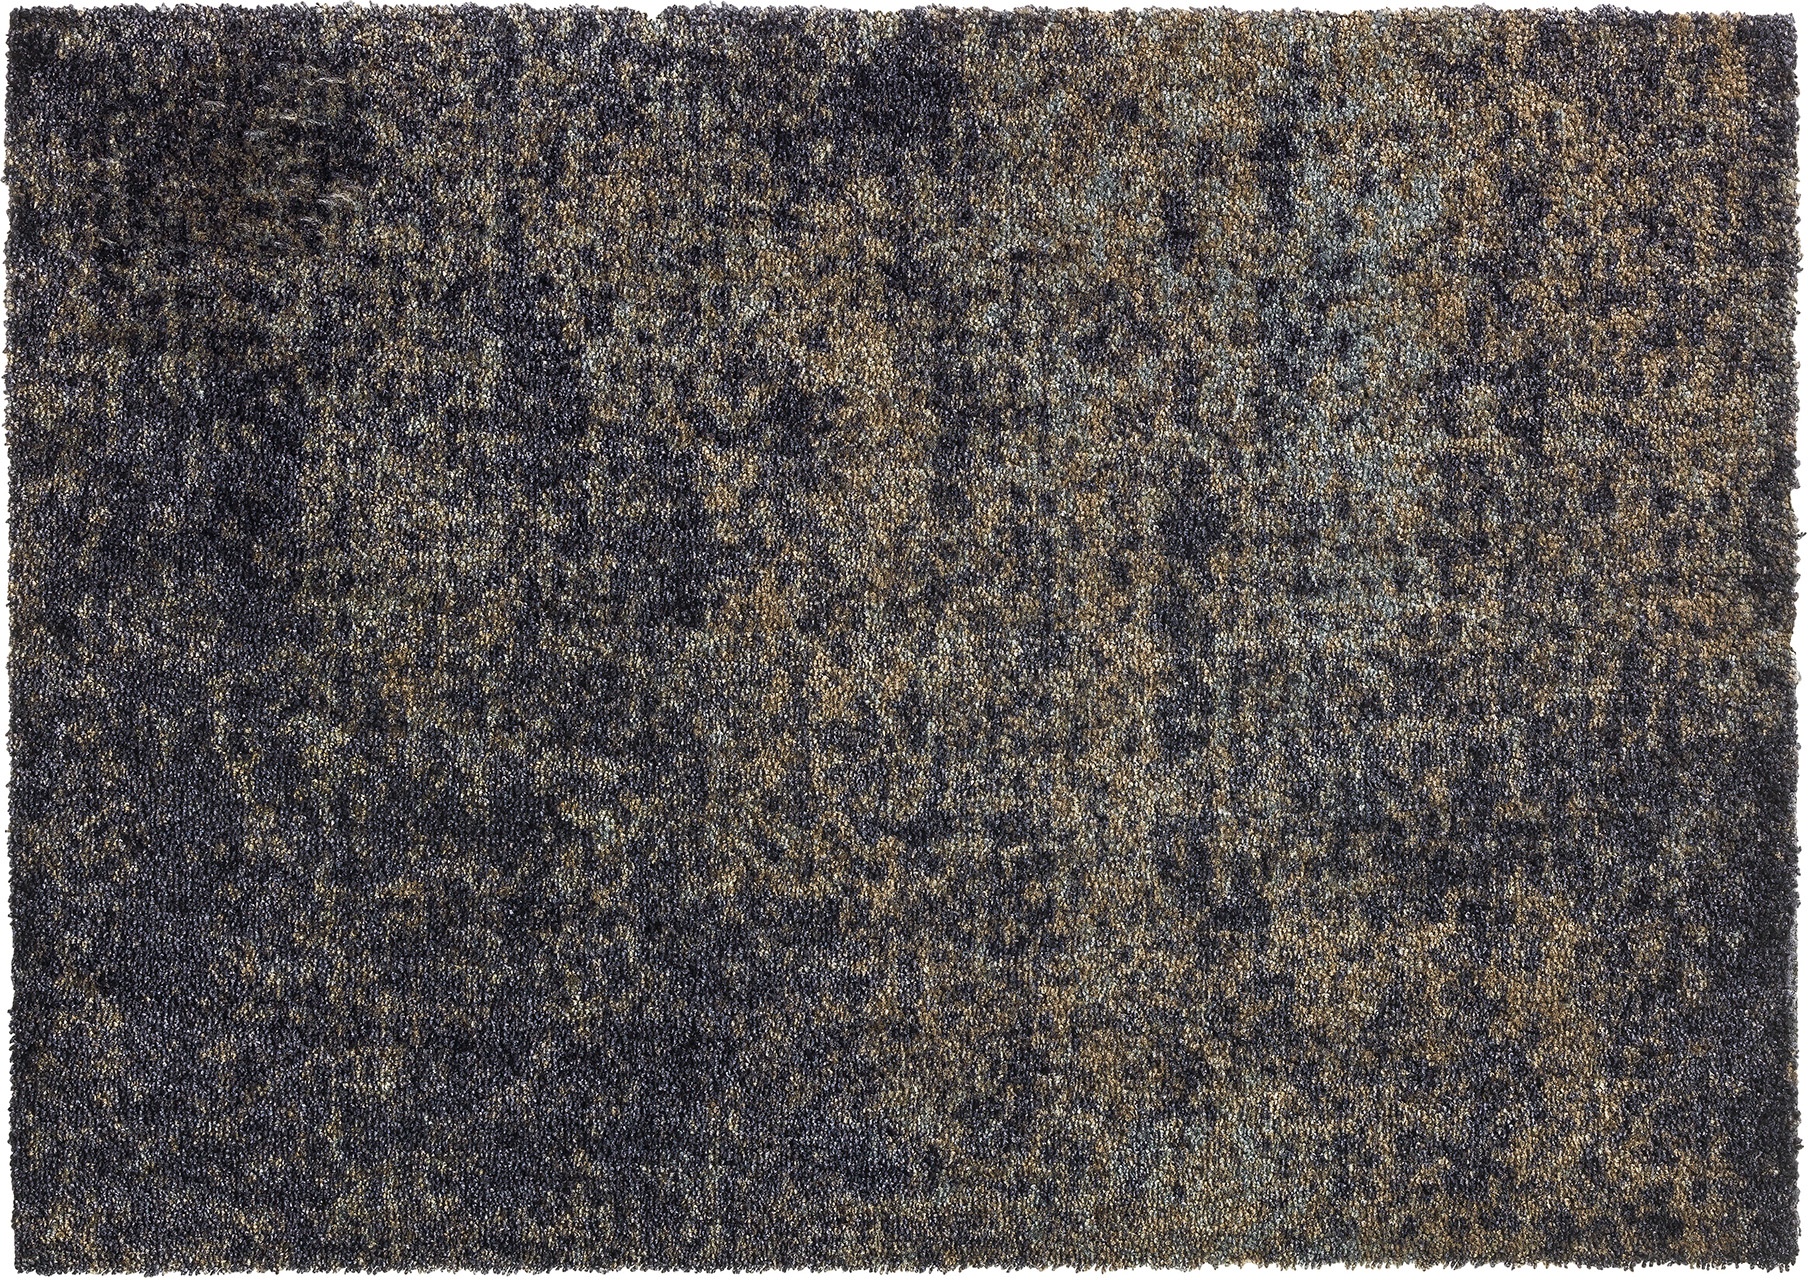 SCHÖNER WOHNEN-Kollektion Fußmatte Manhattan 50 x 70 cm Polyamid Grau Anthrazit